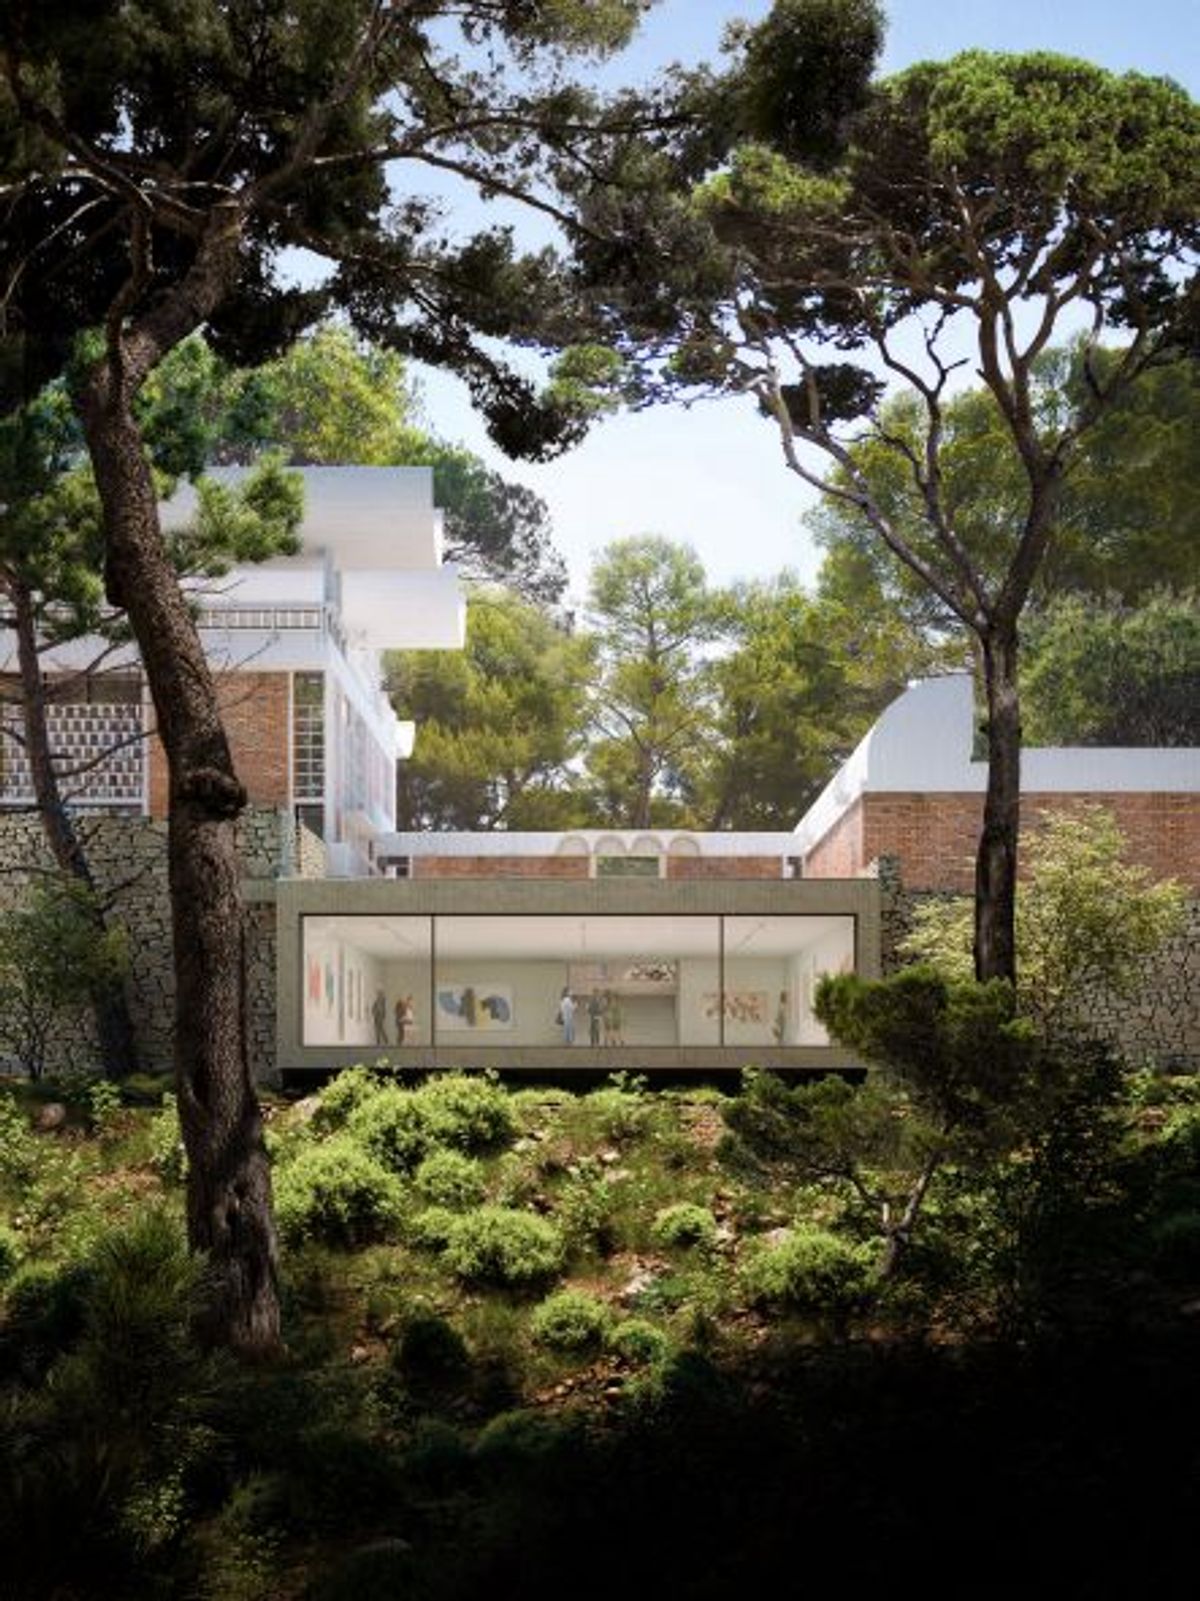 Projet d’extension : vue de la petite salle sous la cour Miró. 

© Glamodrama pour Silvio d’Ascia/ Archives Fondation Maeght